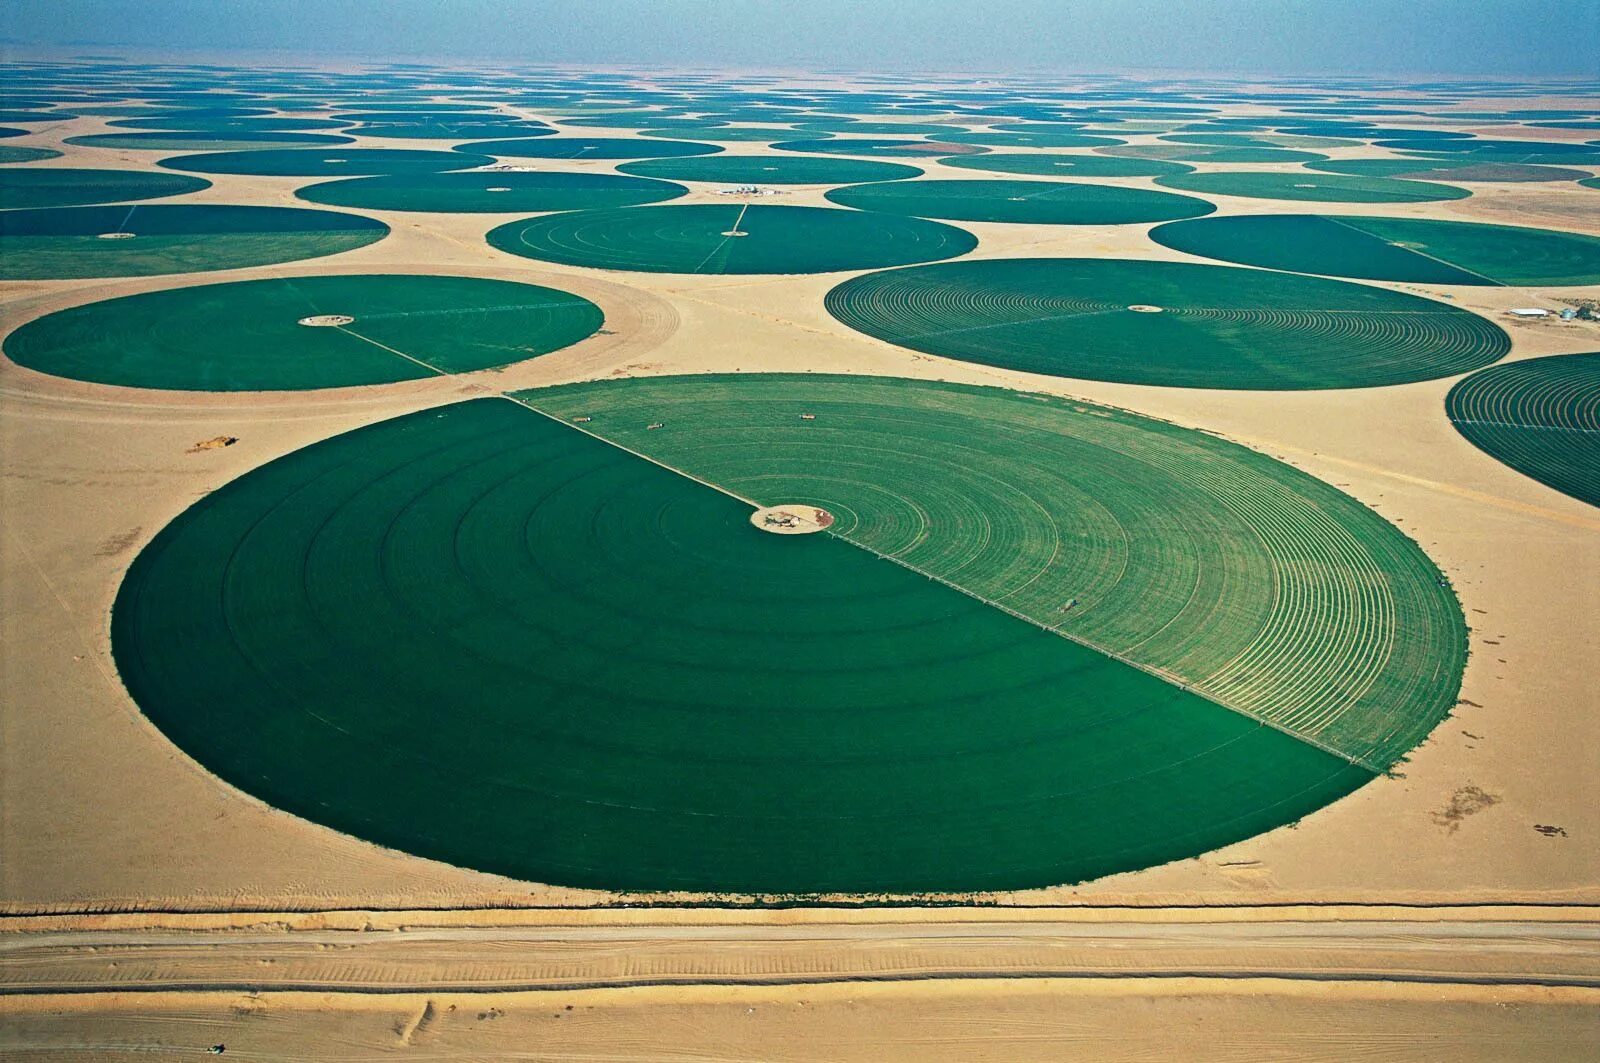 Земля на арабском. Эль-Джауф (Саудовская Аравия). Озеленение Саудовской Аравии. Озеленение пустыни в Саудовской Аравии. Поля Саудовской Аравии фермерские зеленые.